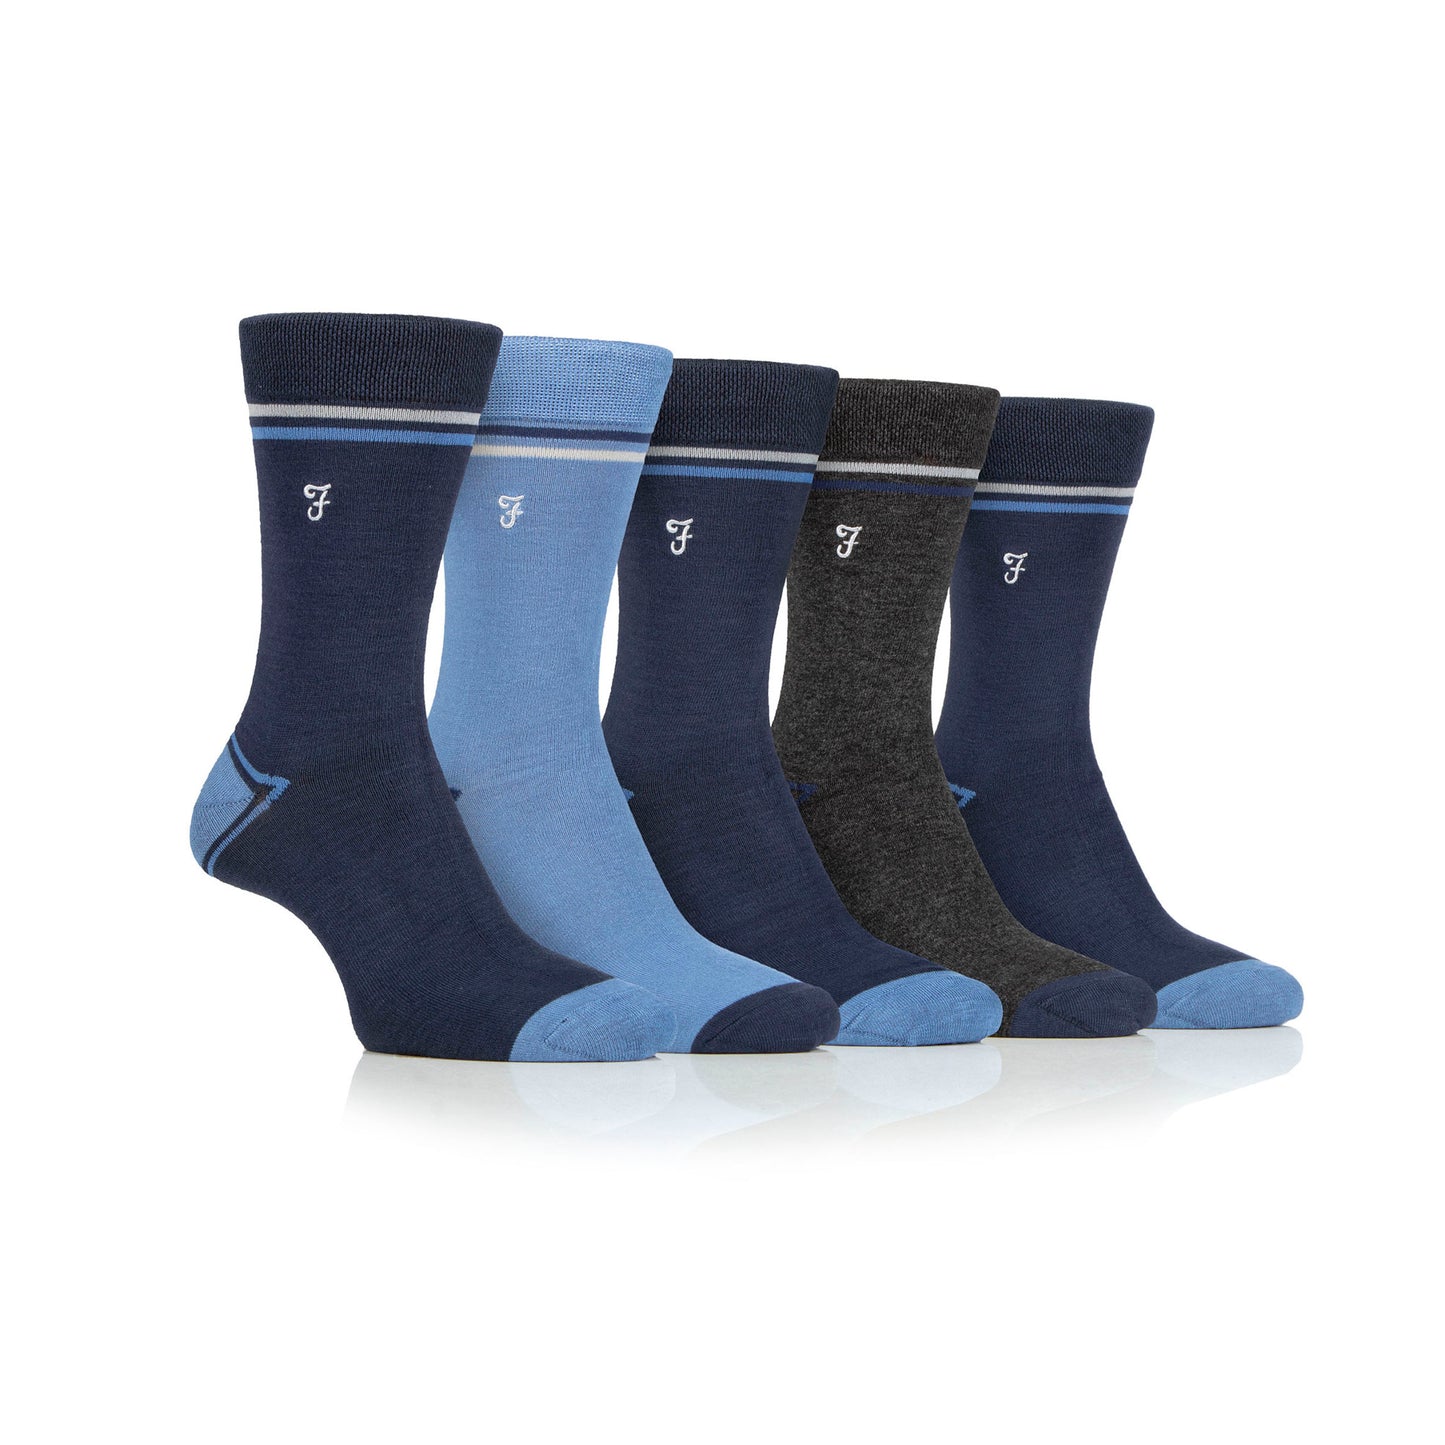 Farah Bamboo Plain Contrast Heel & Toe Navy Blue 6-11 Sock 5 Pack